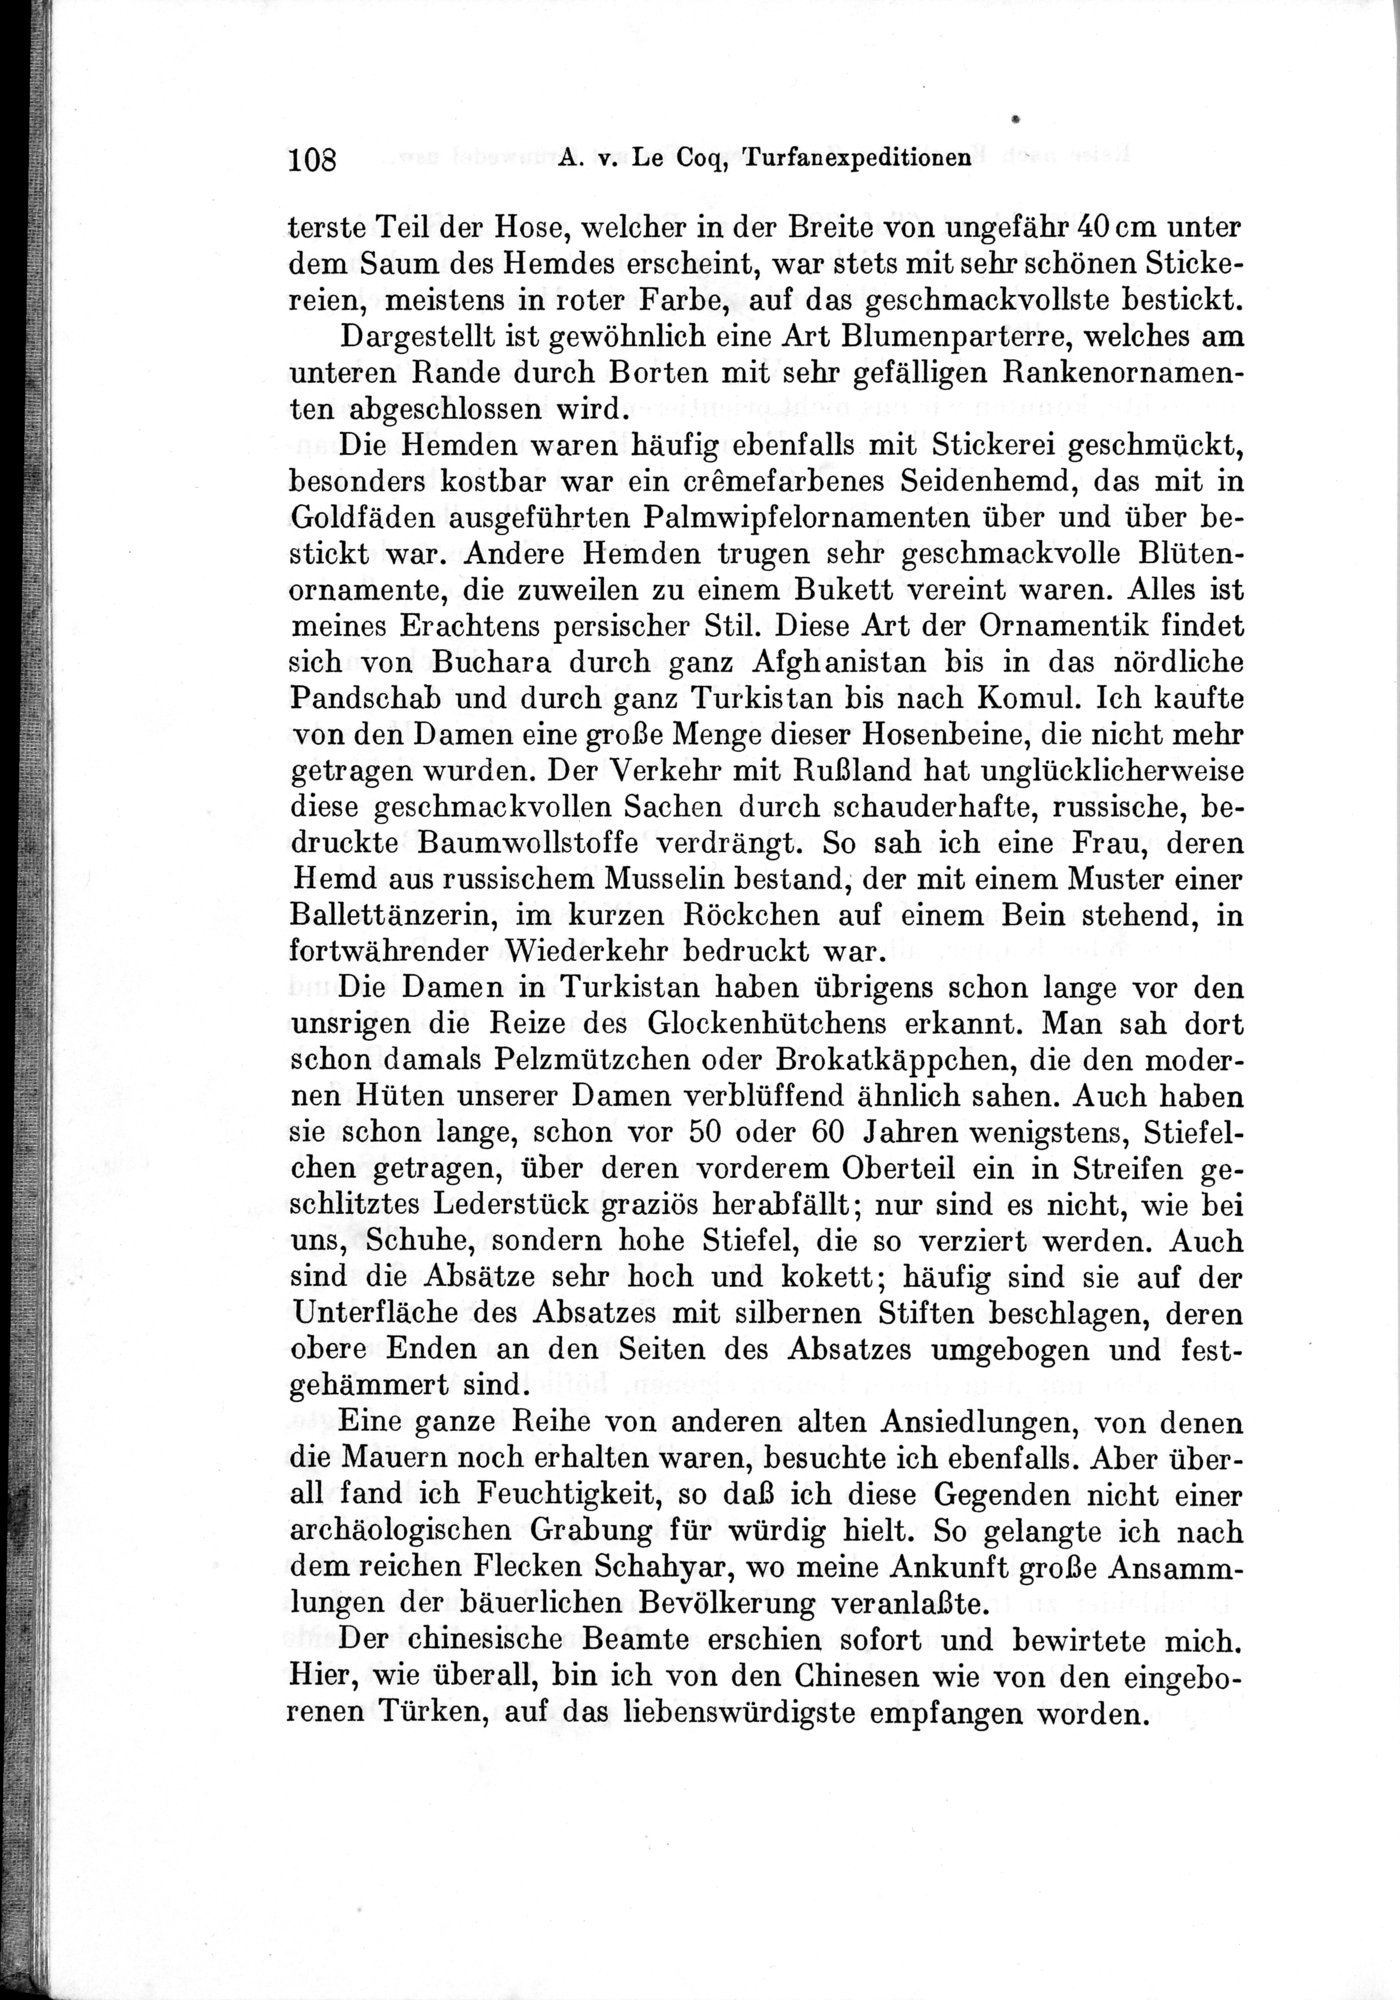 Auf Hellas Spuren in Ostturkistan : vol.1 / Page 158 (Grayscale High Resolution Image)